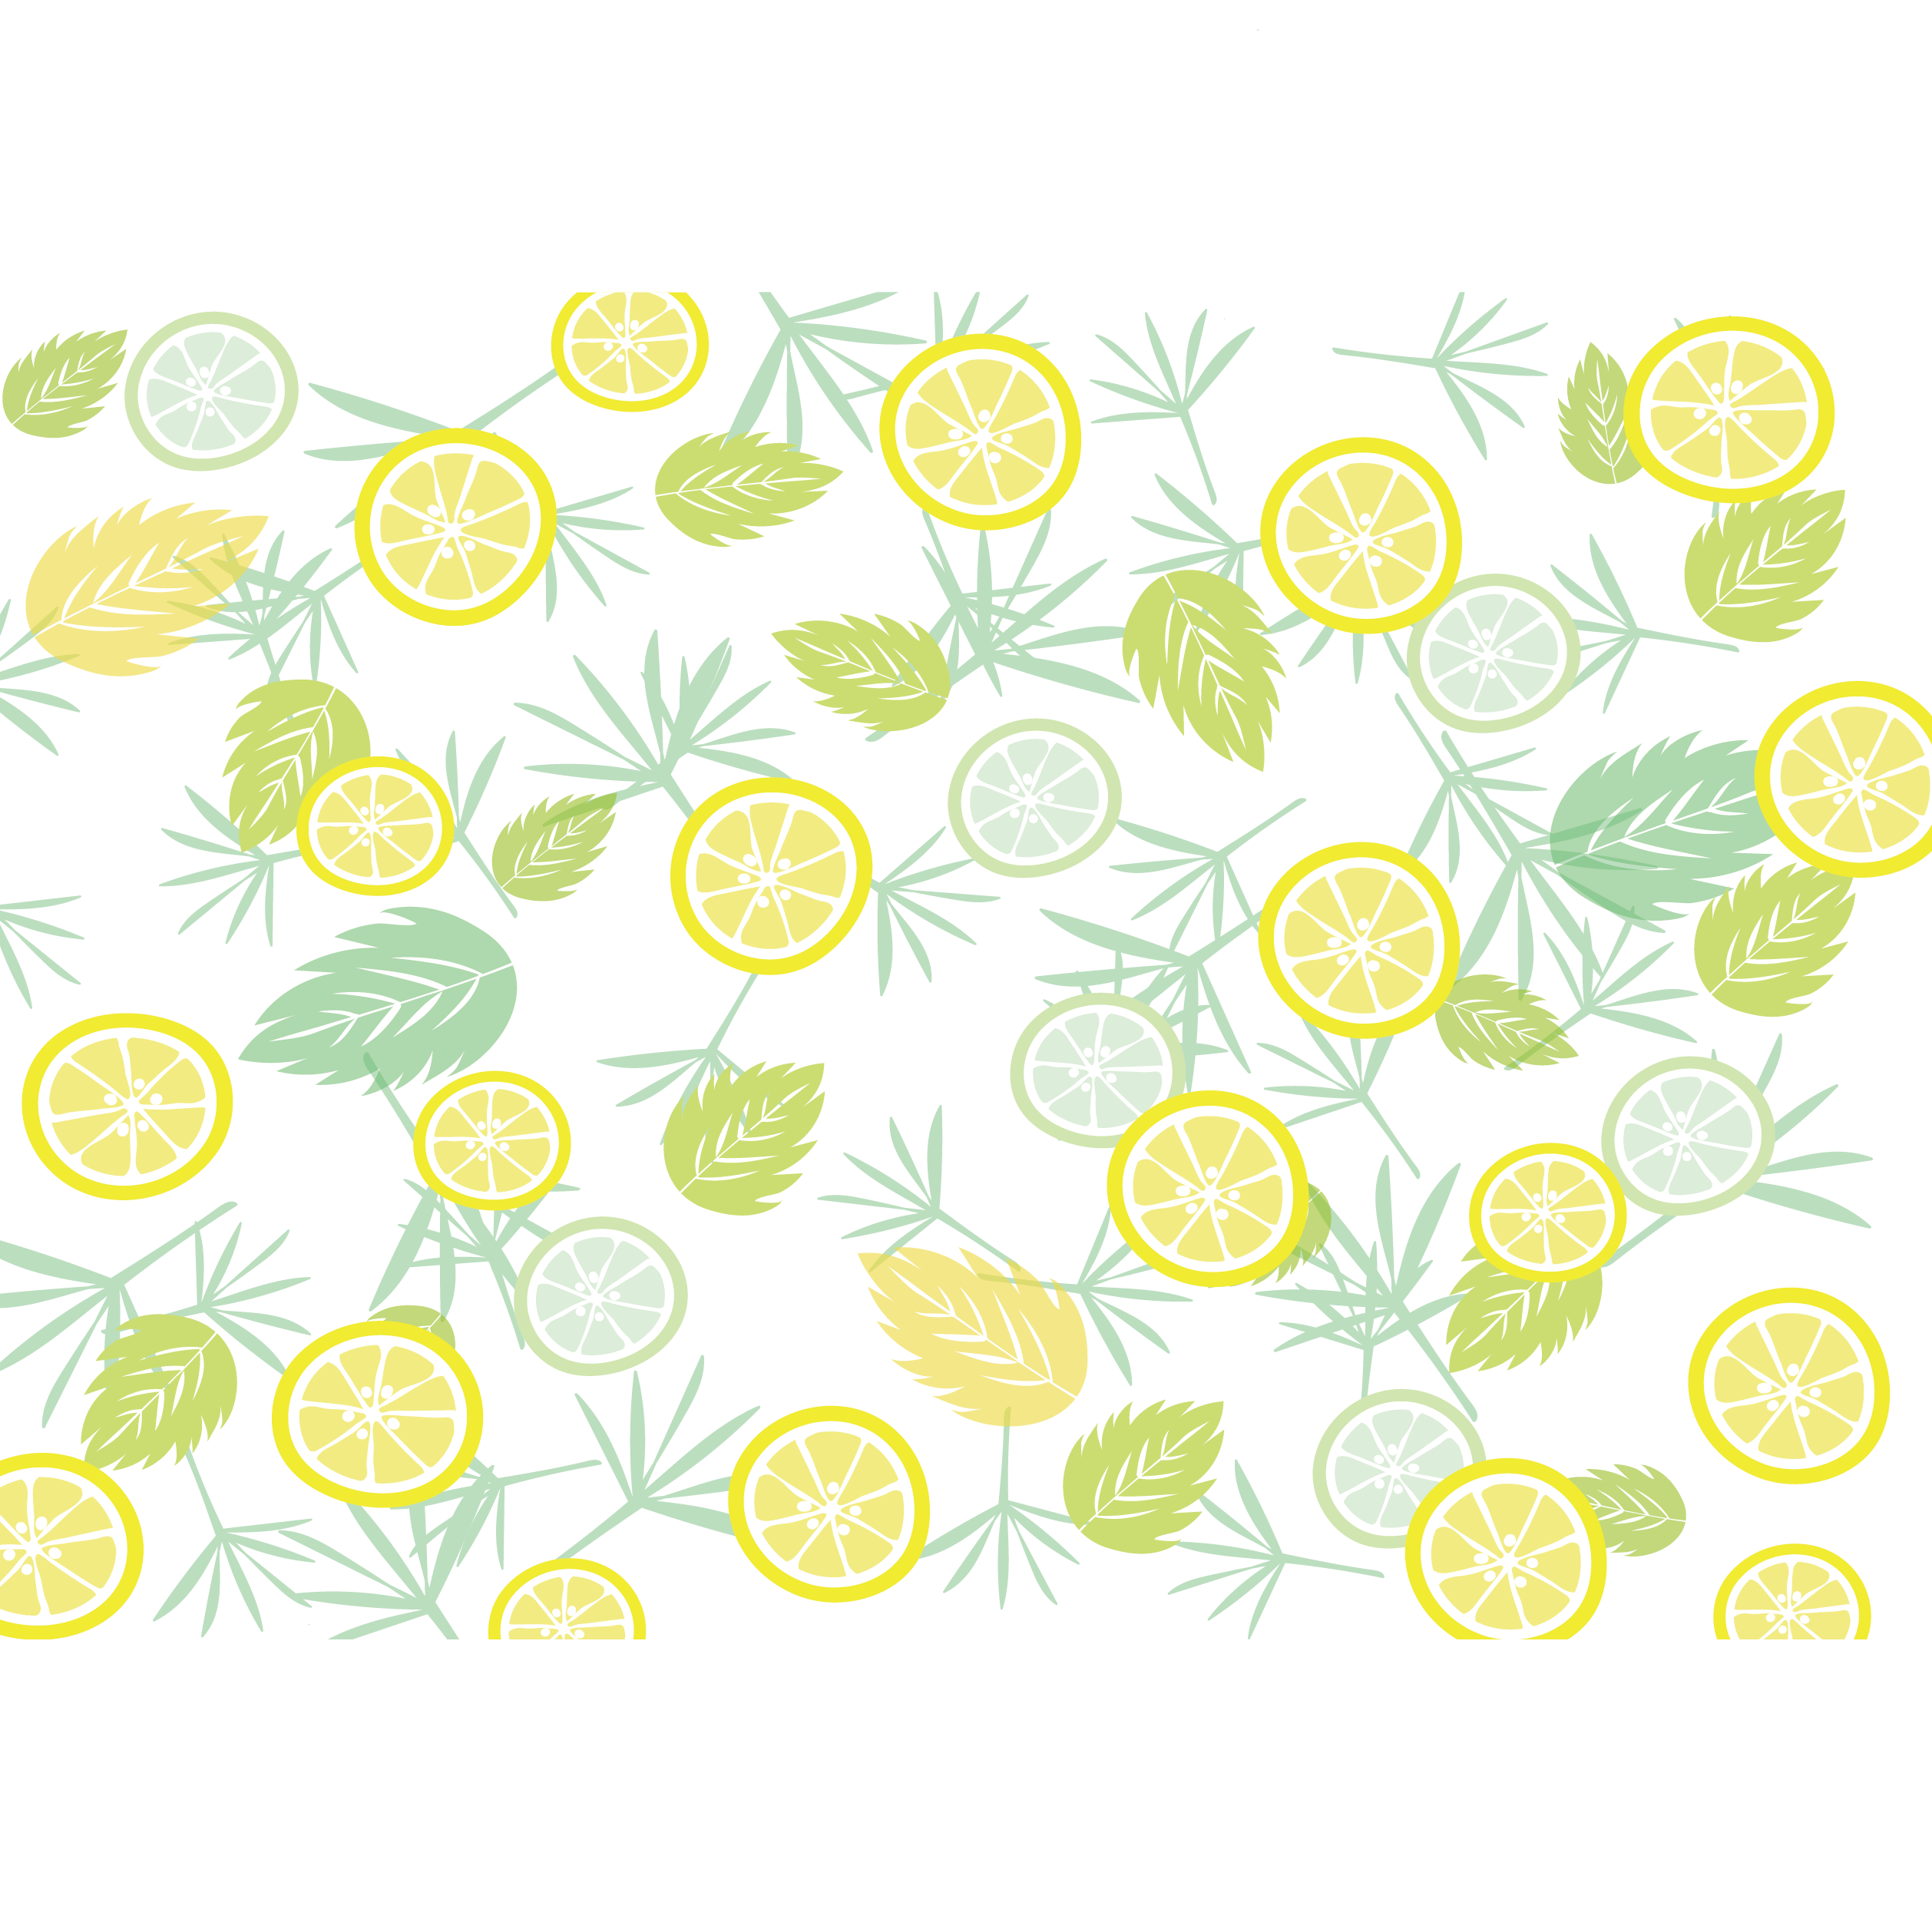 爽やかな葉っぱとレモンとライムのイラスト デザイン素材 背景